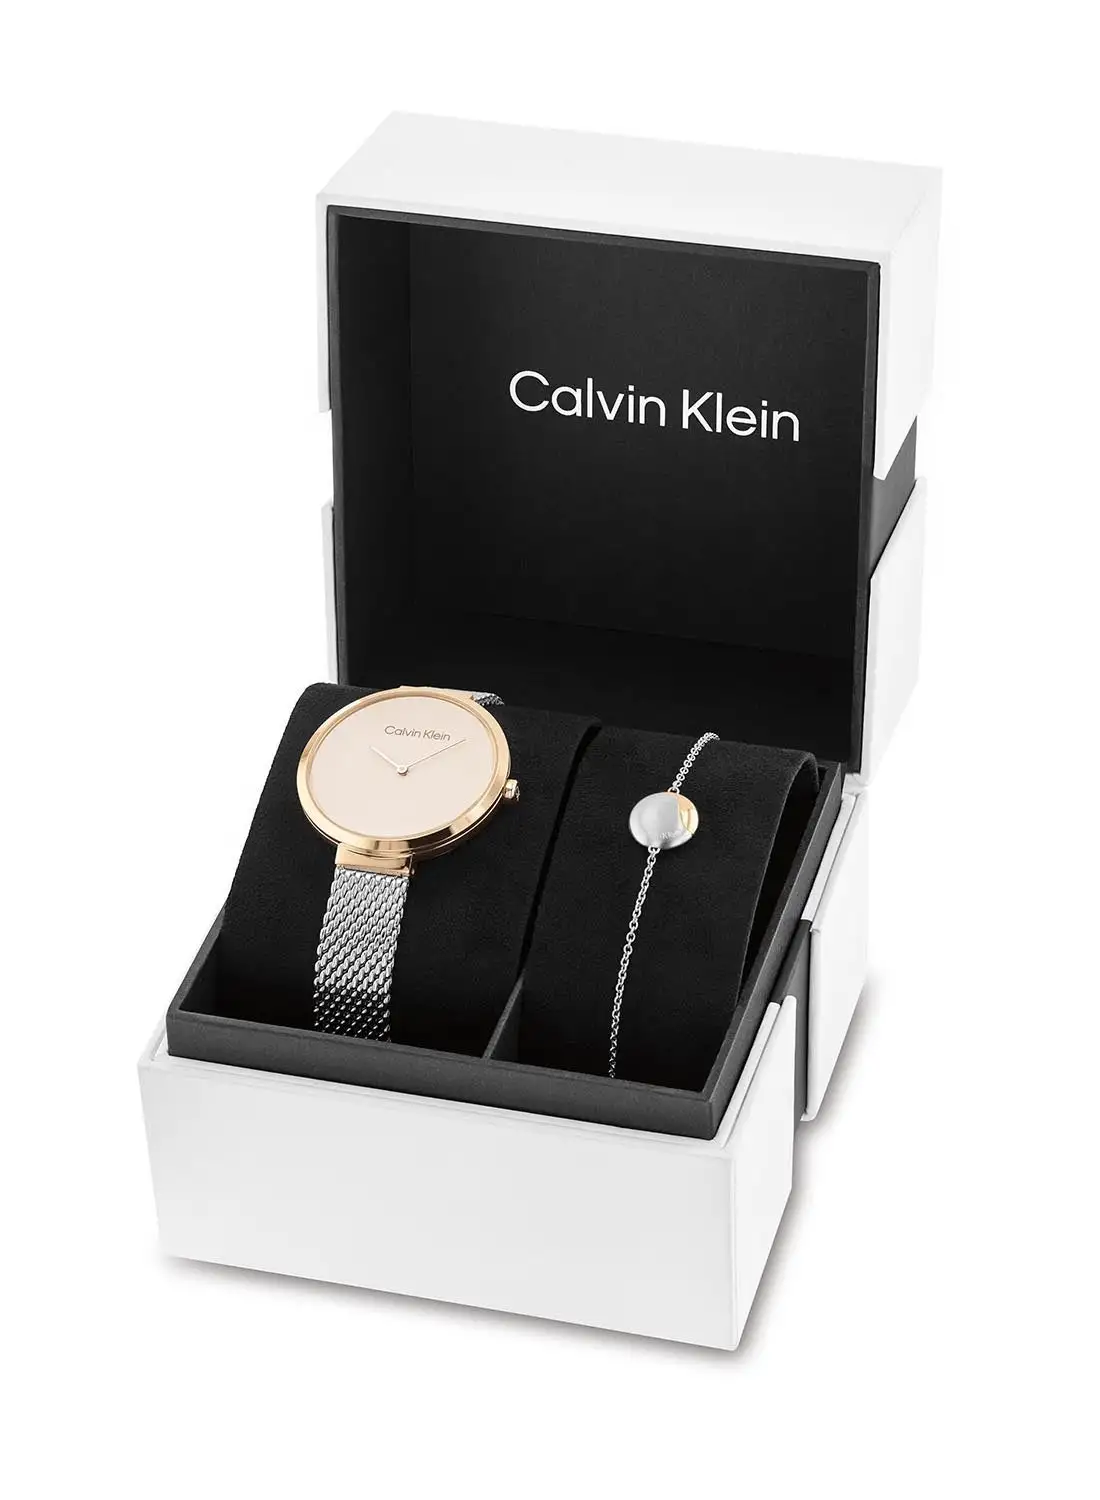 CALVIN KLEIN Women's Stainless Steel Wrist Watch 35700005